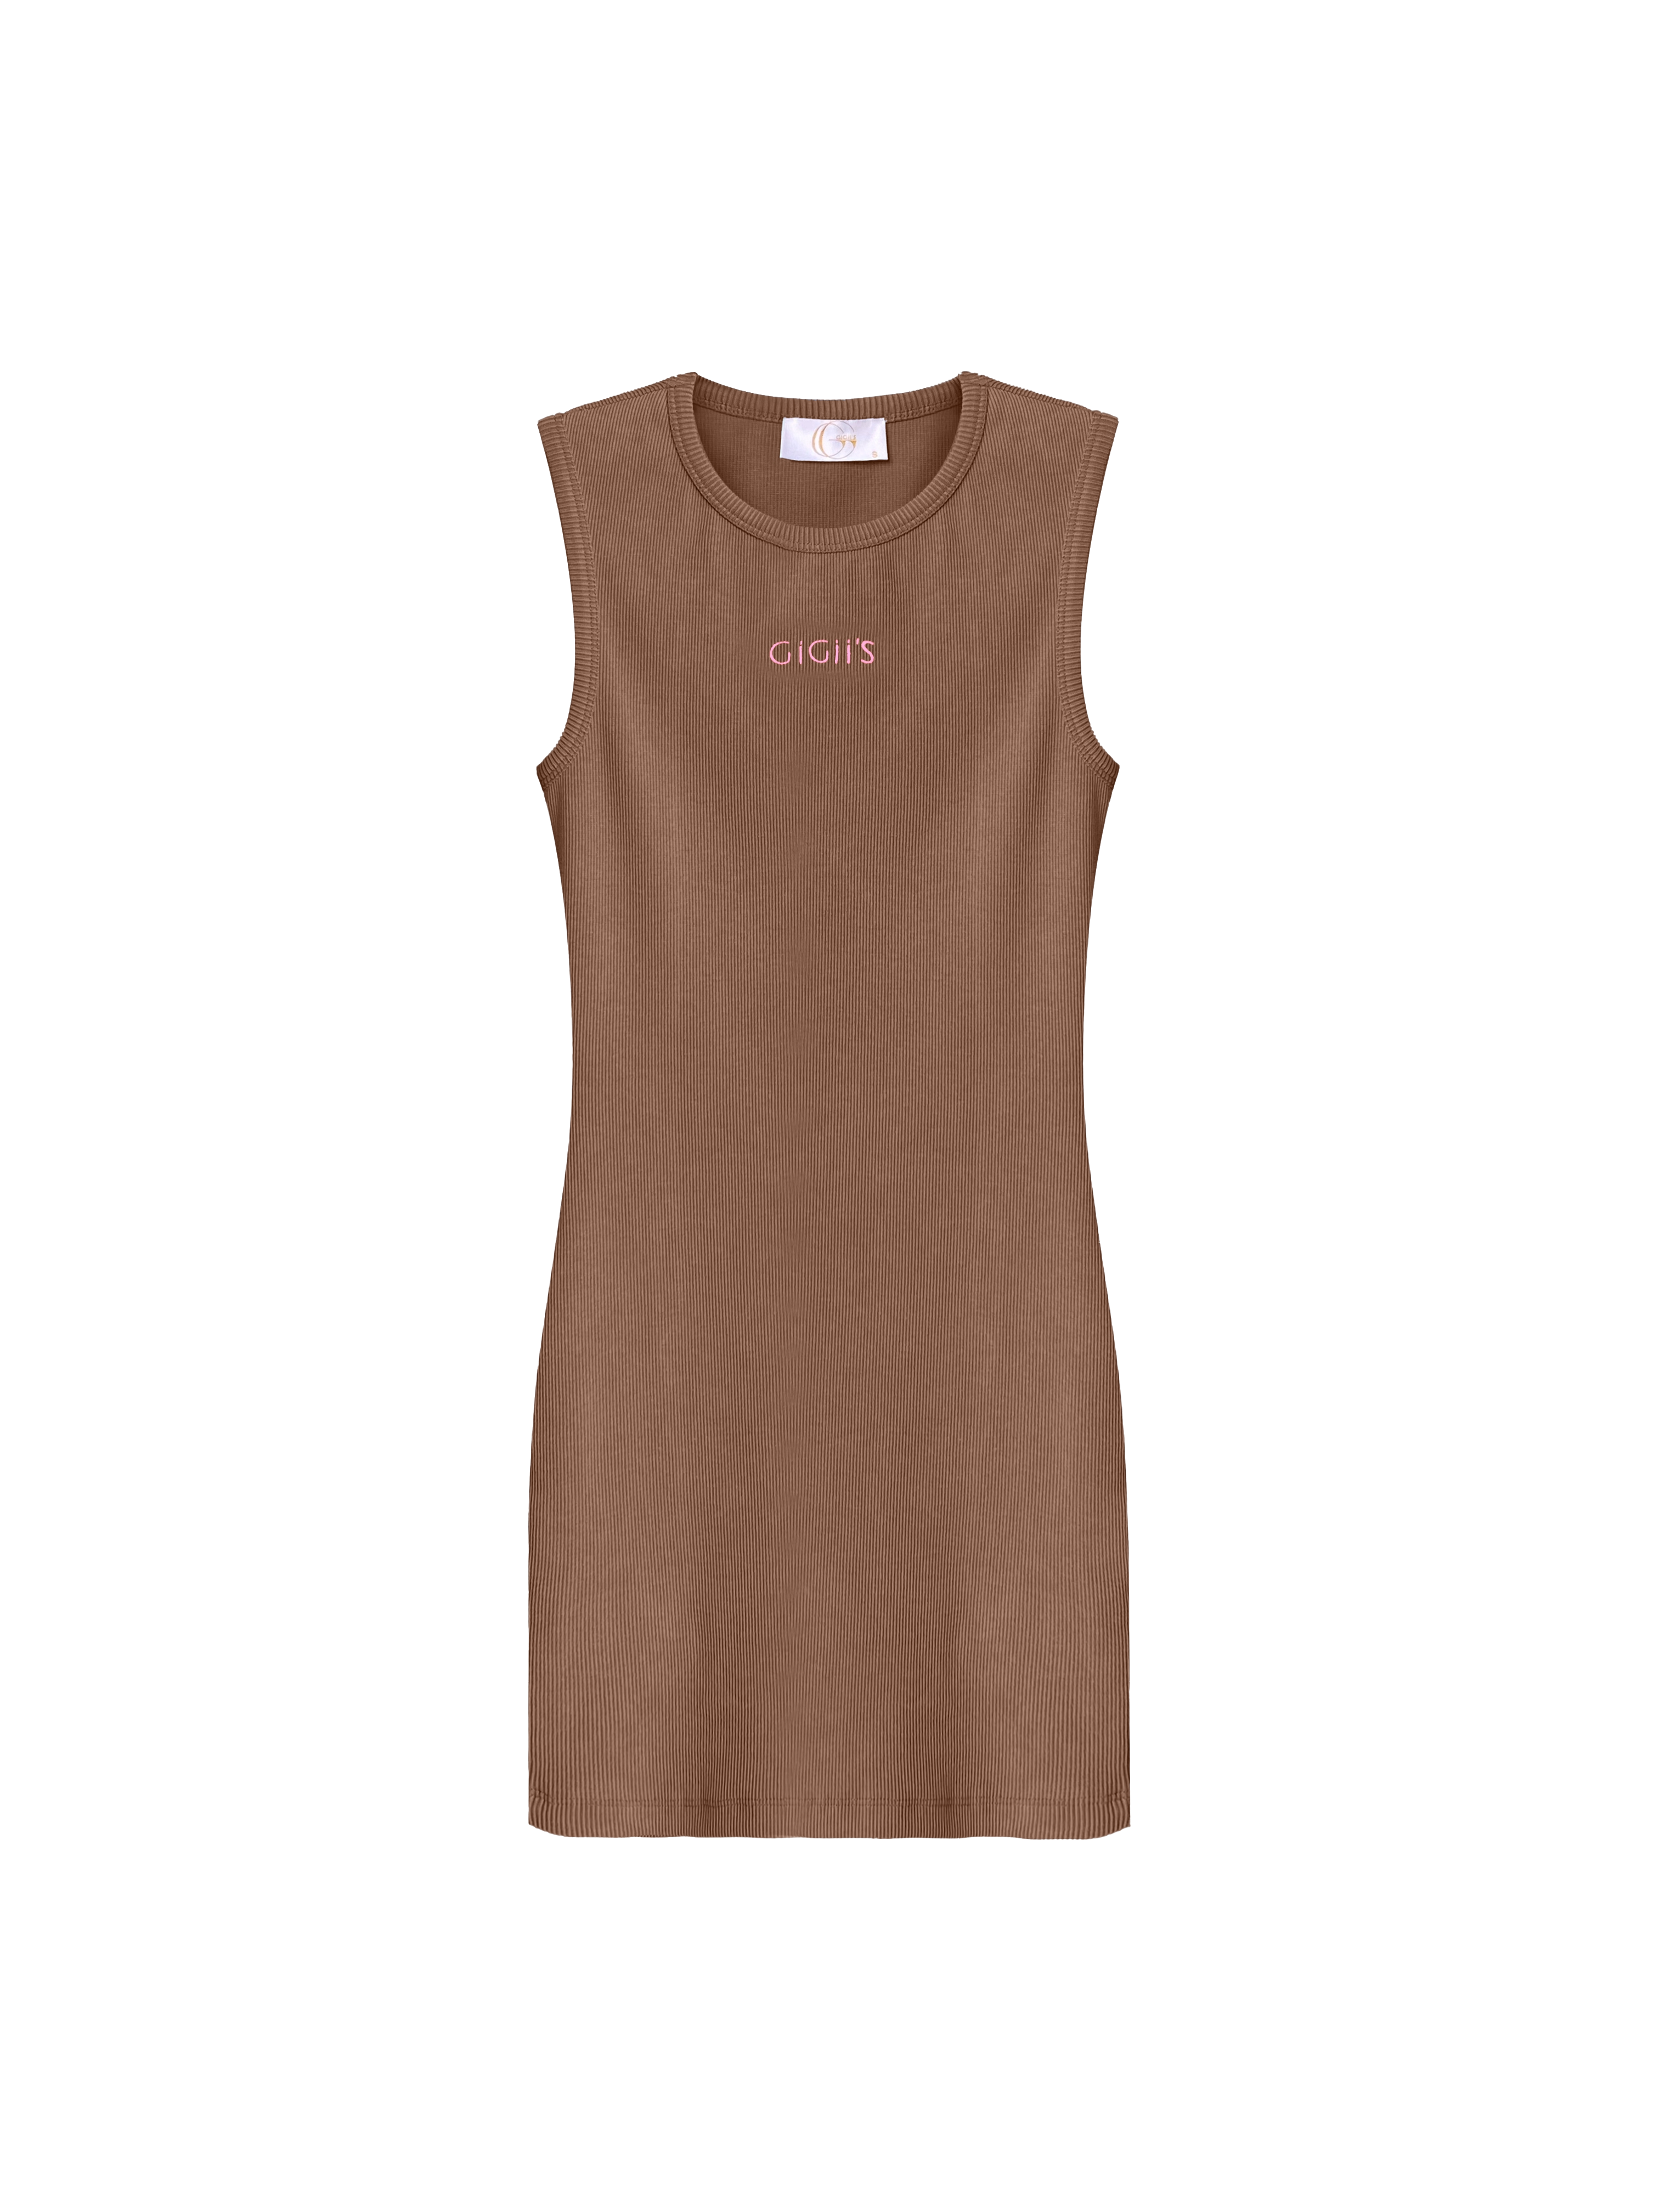 Gigii's Soho Mini Dress In Brown